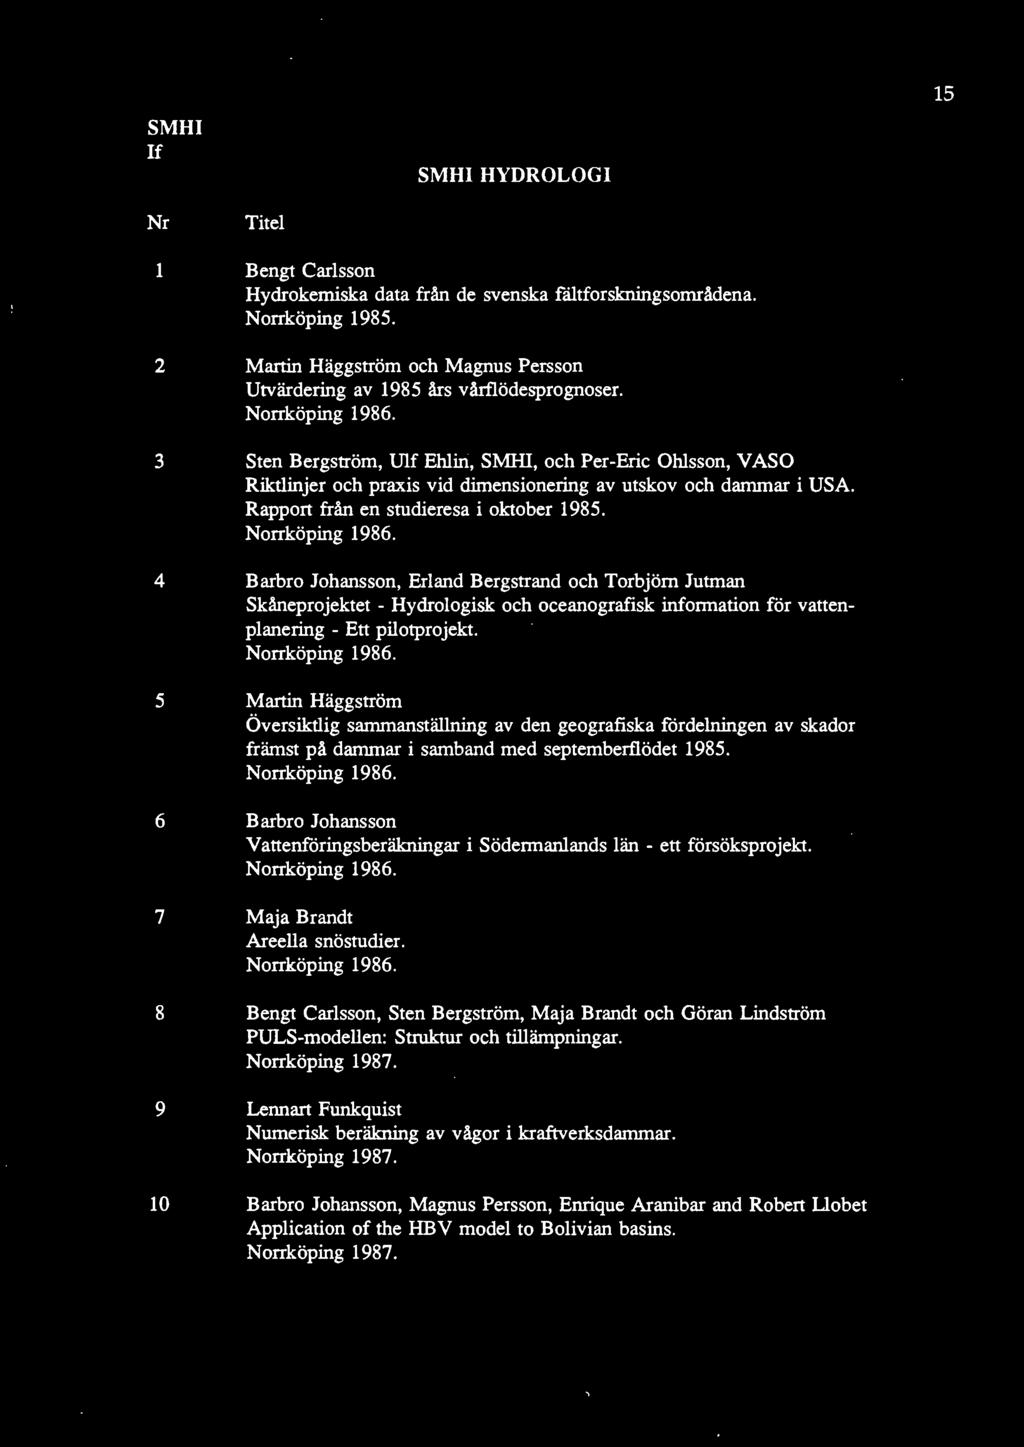 3 Sten Bergström, Ulf Ehlin, SMHI, och Per-Eric Ohlsson, V ASO Riktlinjer och praxis vid dimensionering av utskov och dammar i USA. Rapport från en studieresa i oktober 1985. Norrköping 1986.